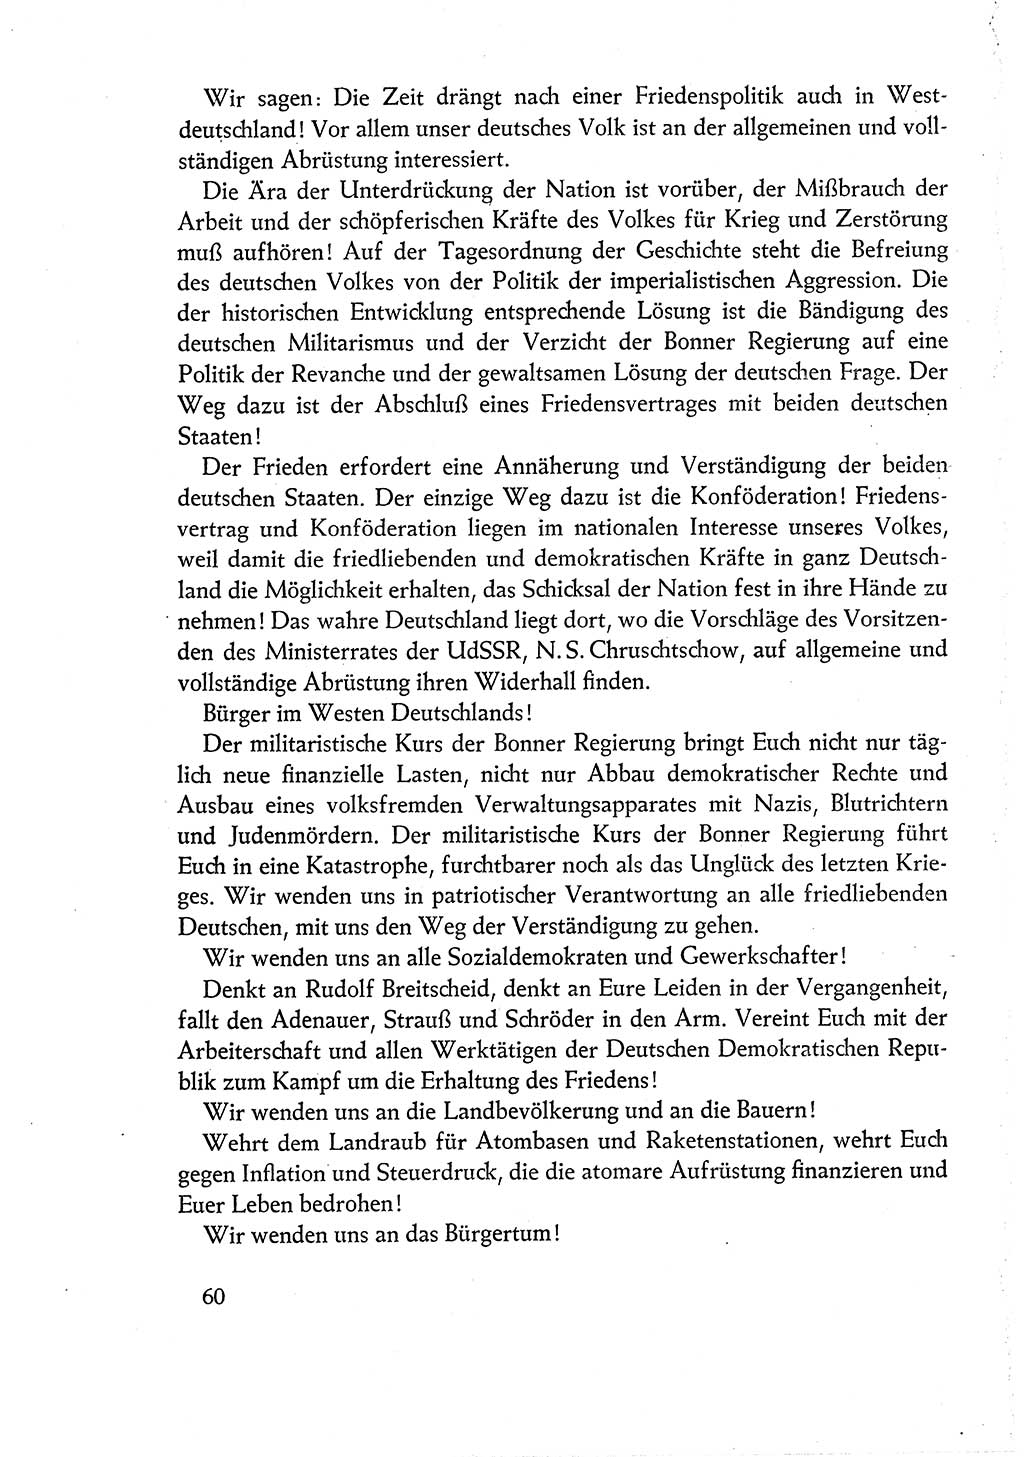 Dokumente der Sozialistischen Einheitspartei Deutschlands (SED) [Deutsche Demokratische Republik (DDR)] 1960-1961, Seite 60 (Dok. SED DDR 1960-1961, S. 60)